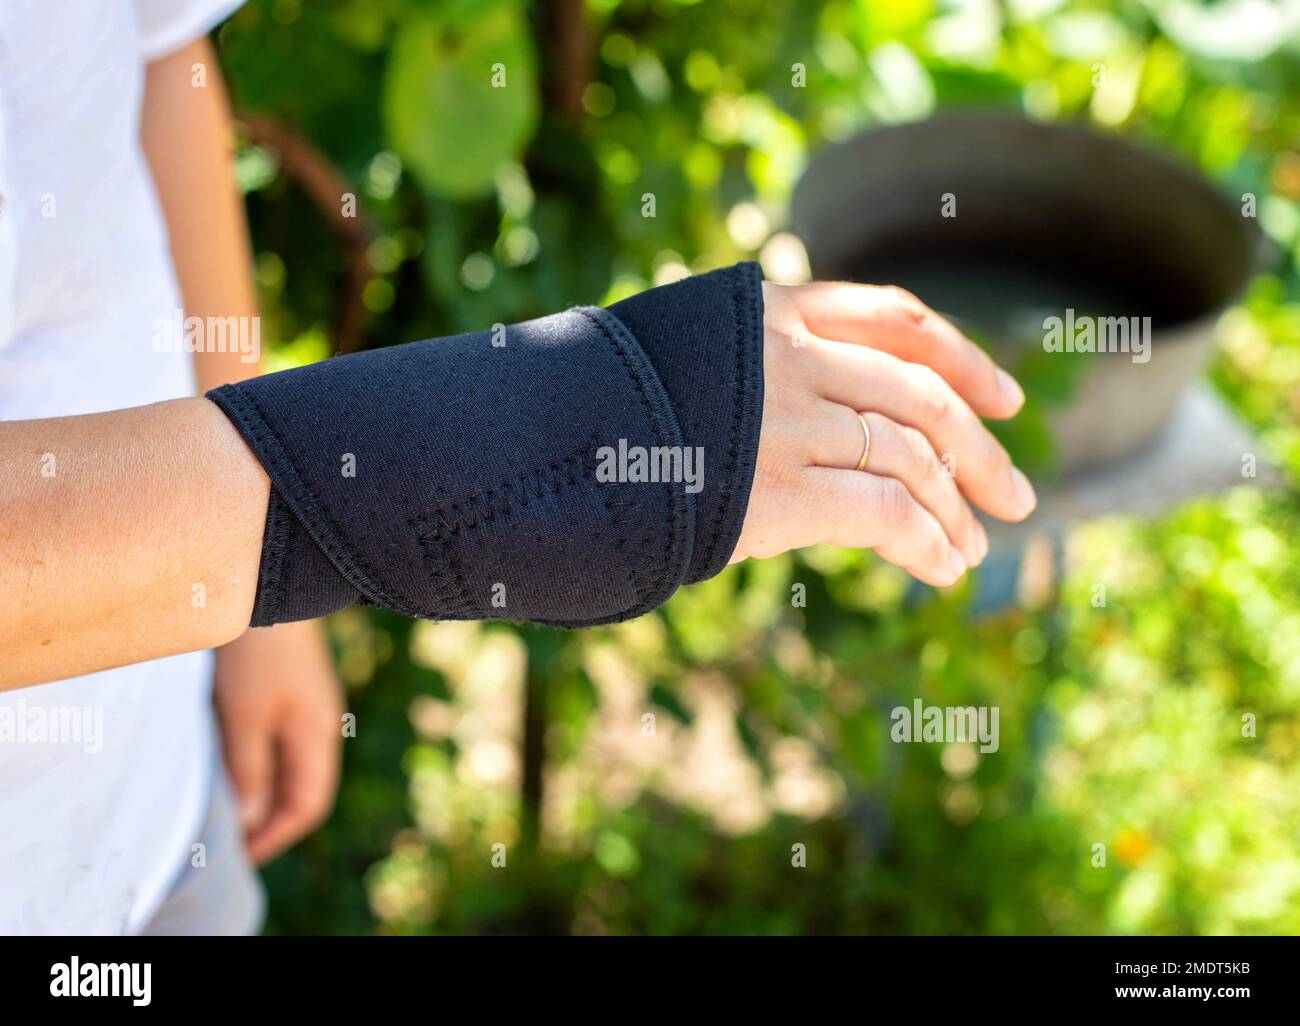 Universalfixateur des Handgelenkes an der Hand des Patienten. Bandage bei Fraktur und Verstauchung des Radiokarpalgelenkes, Schmerzen im Arm. Stockfoto